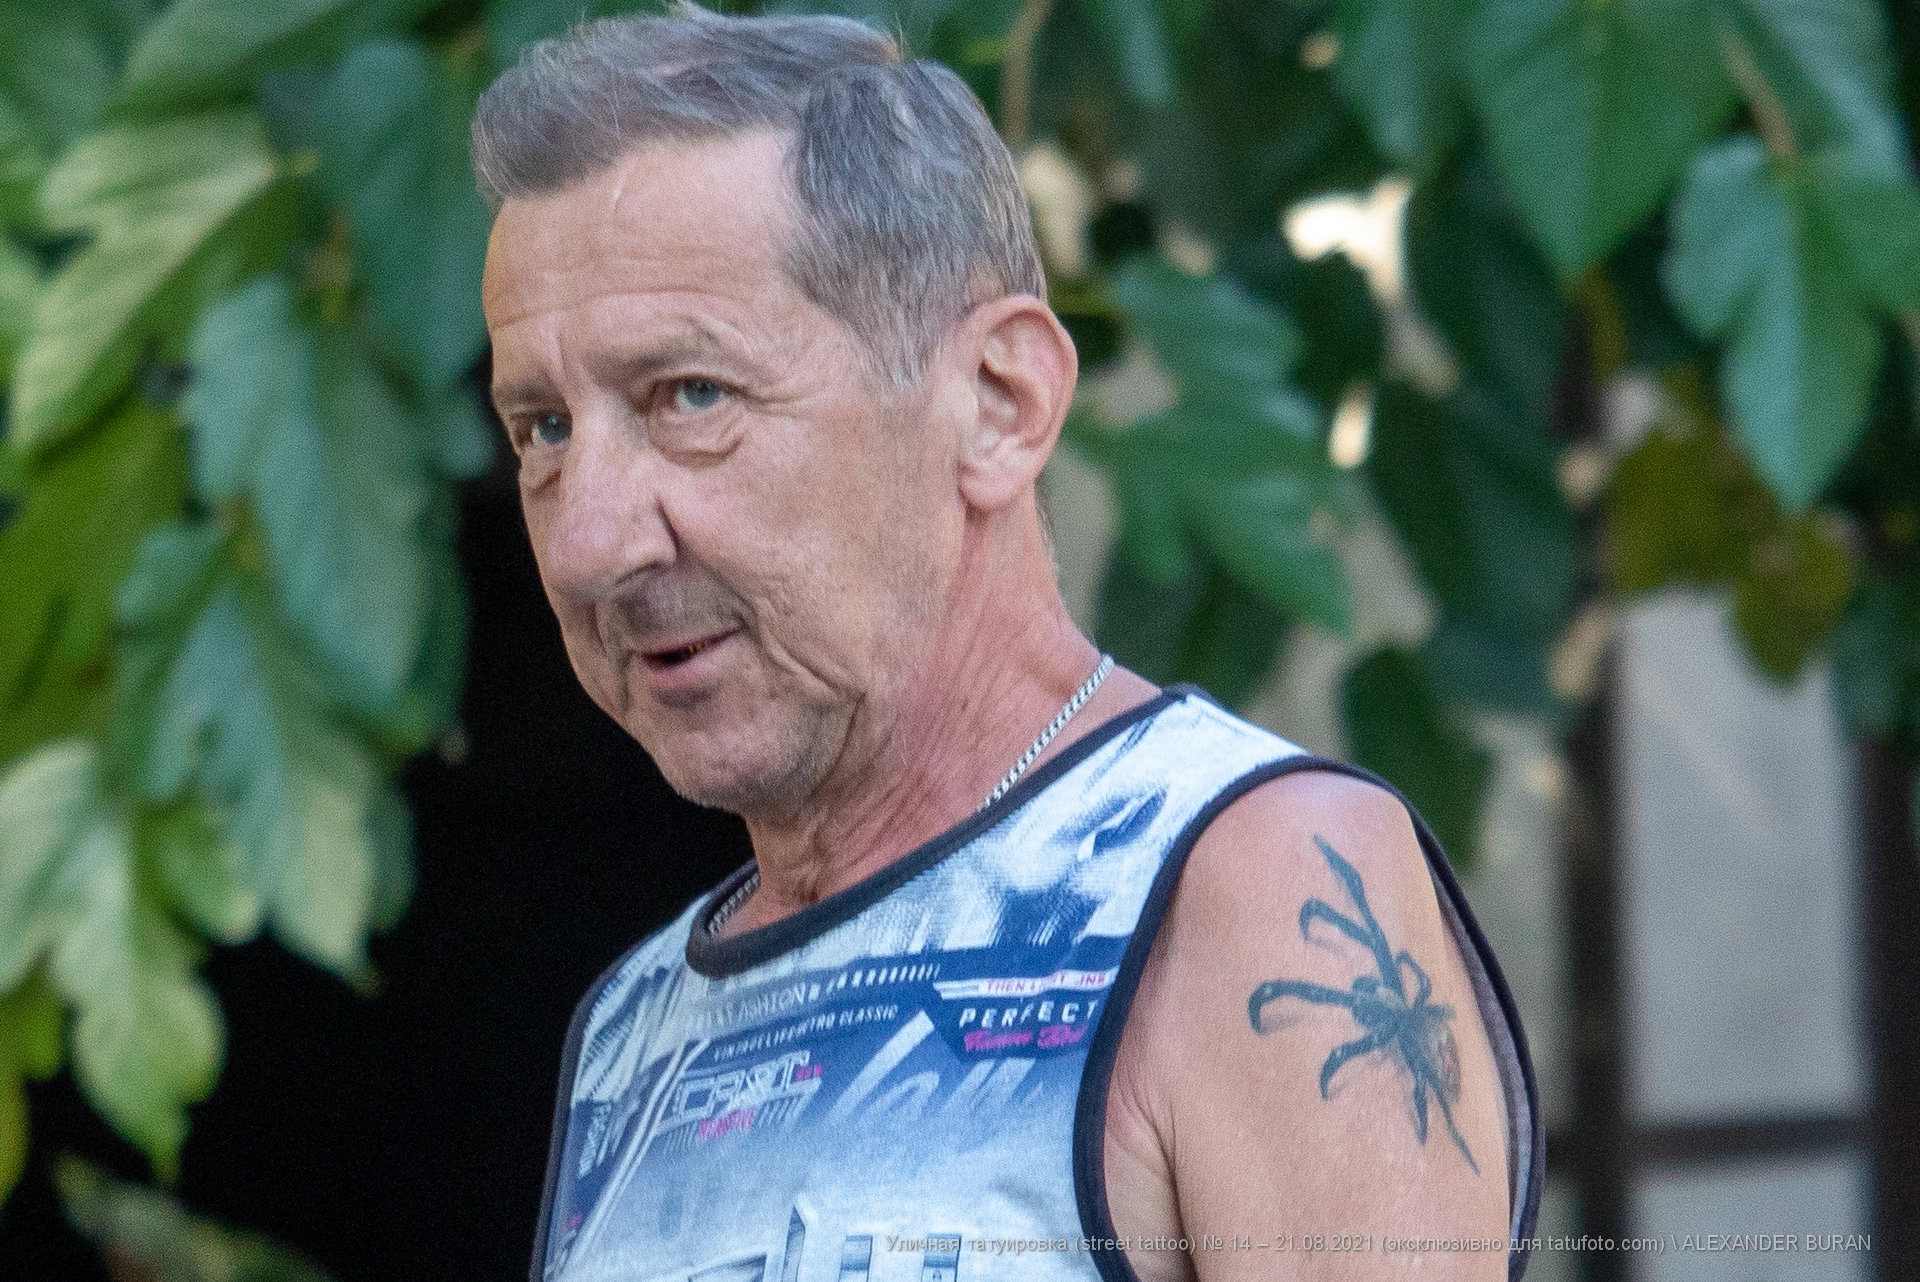 Тату с пауком на плече у пожилого мужчины - Уличная тату (street tattoo) № 14–210821 2